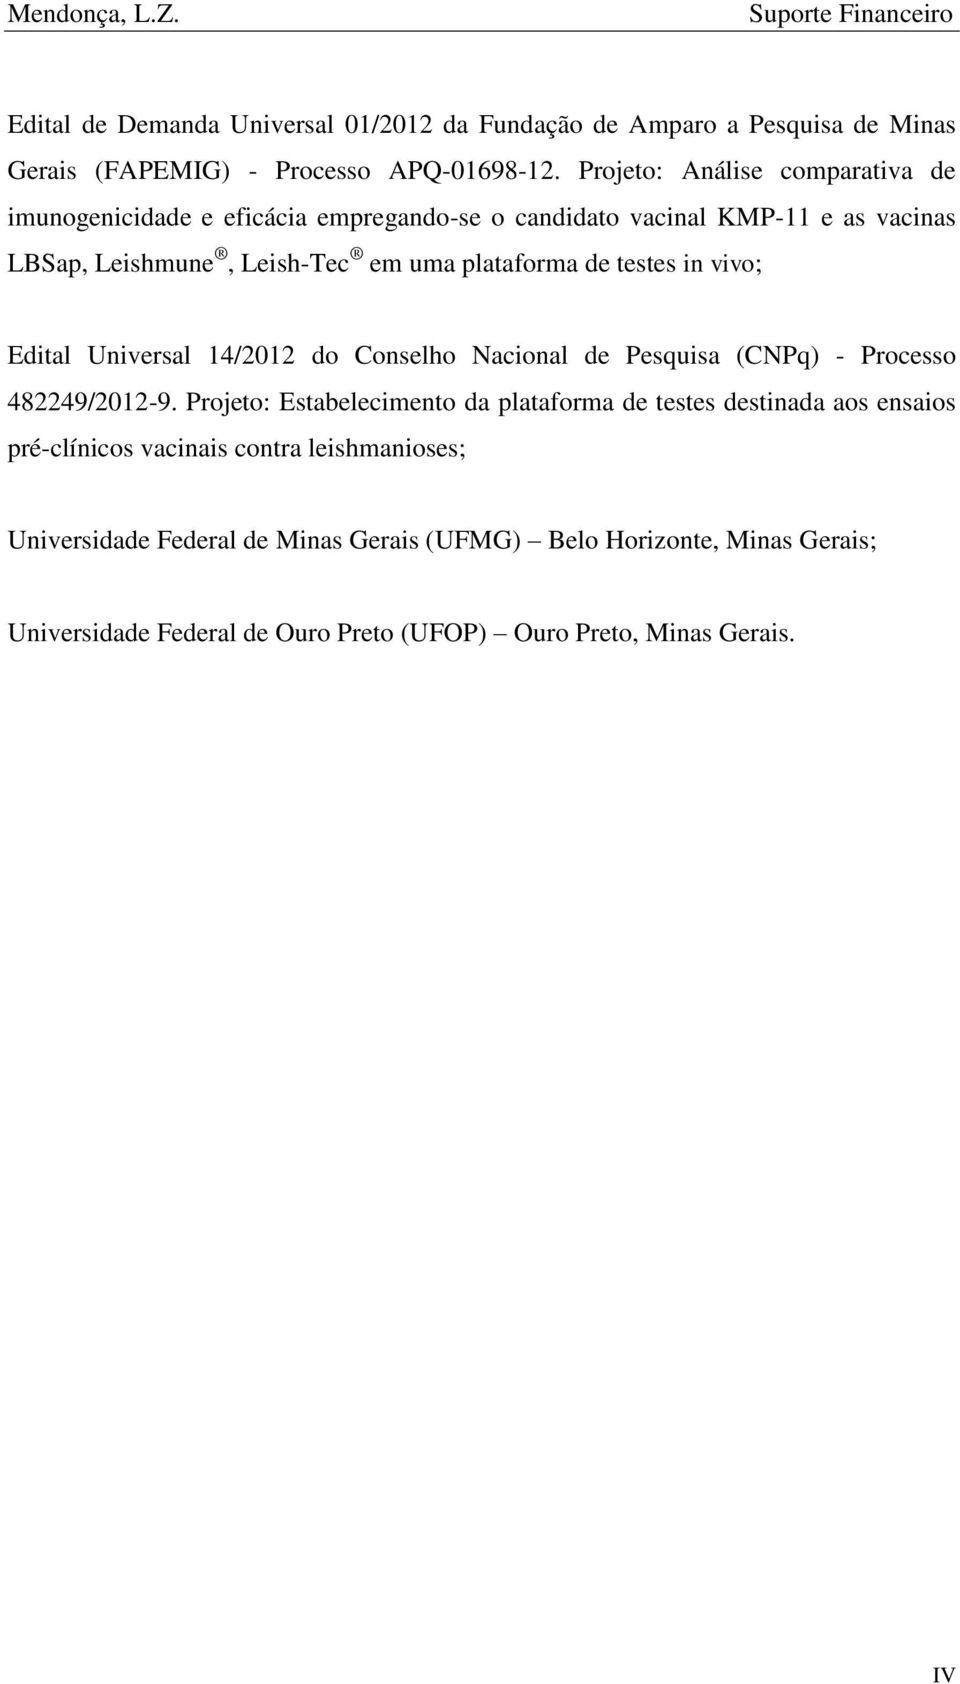 in vivo; Edital Universal 14/2012 do Conselho Nacional de Pesquisa (CNPq) - Processo 482249/2012-9.